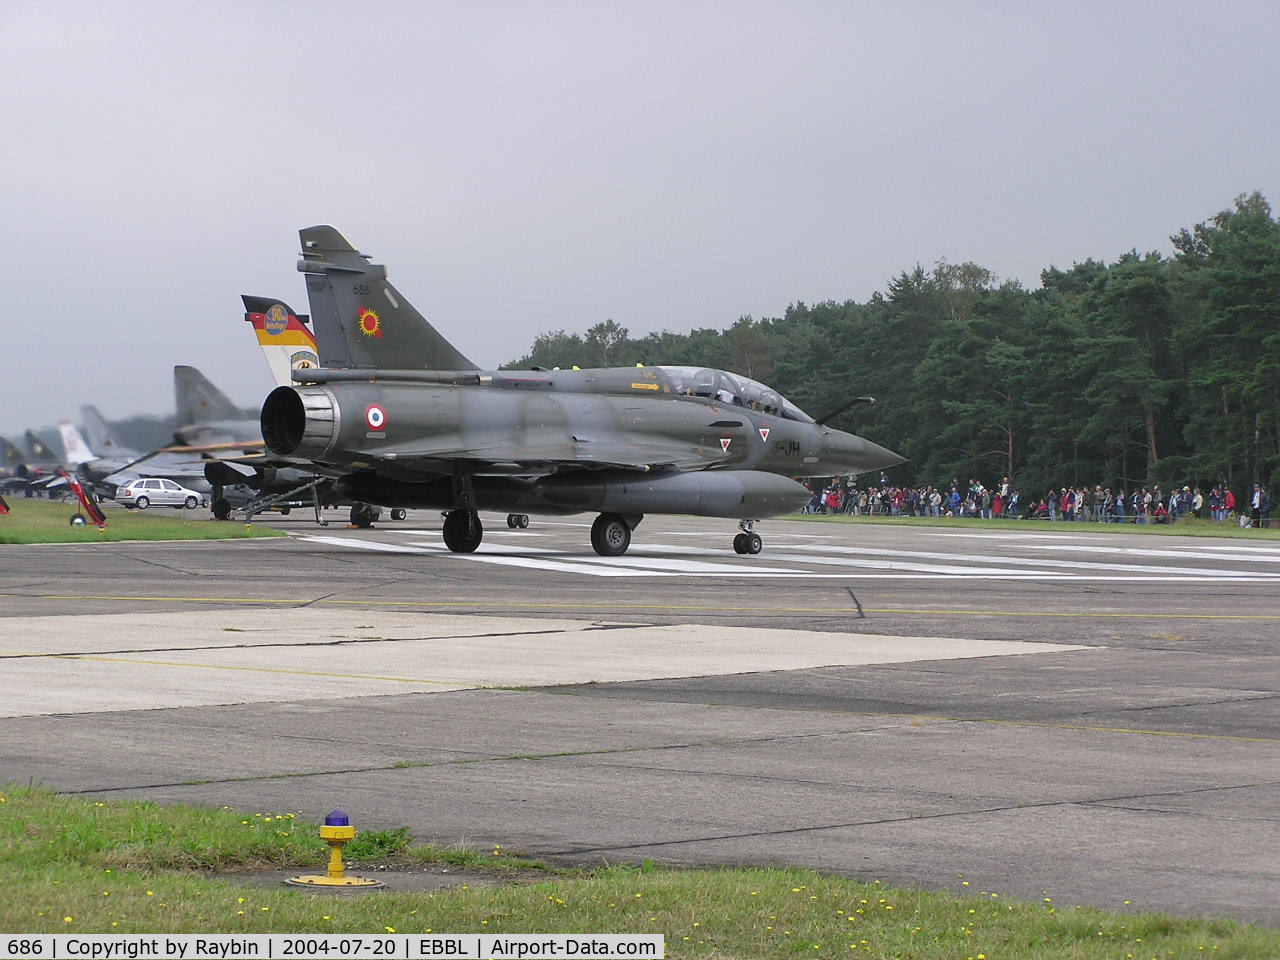 686, Dassault Mirage 2000D C/N 686, still active